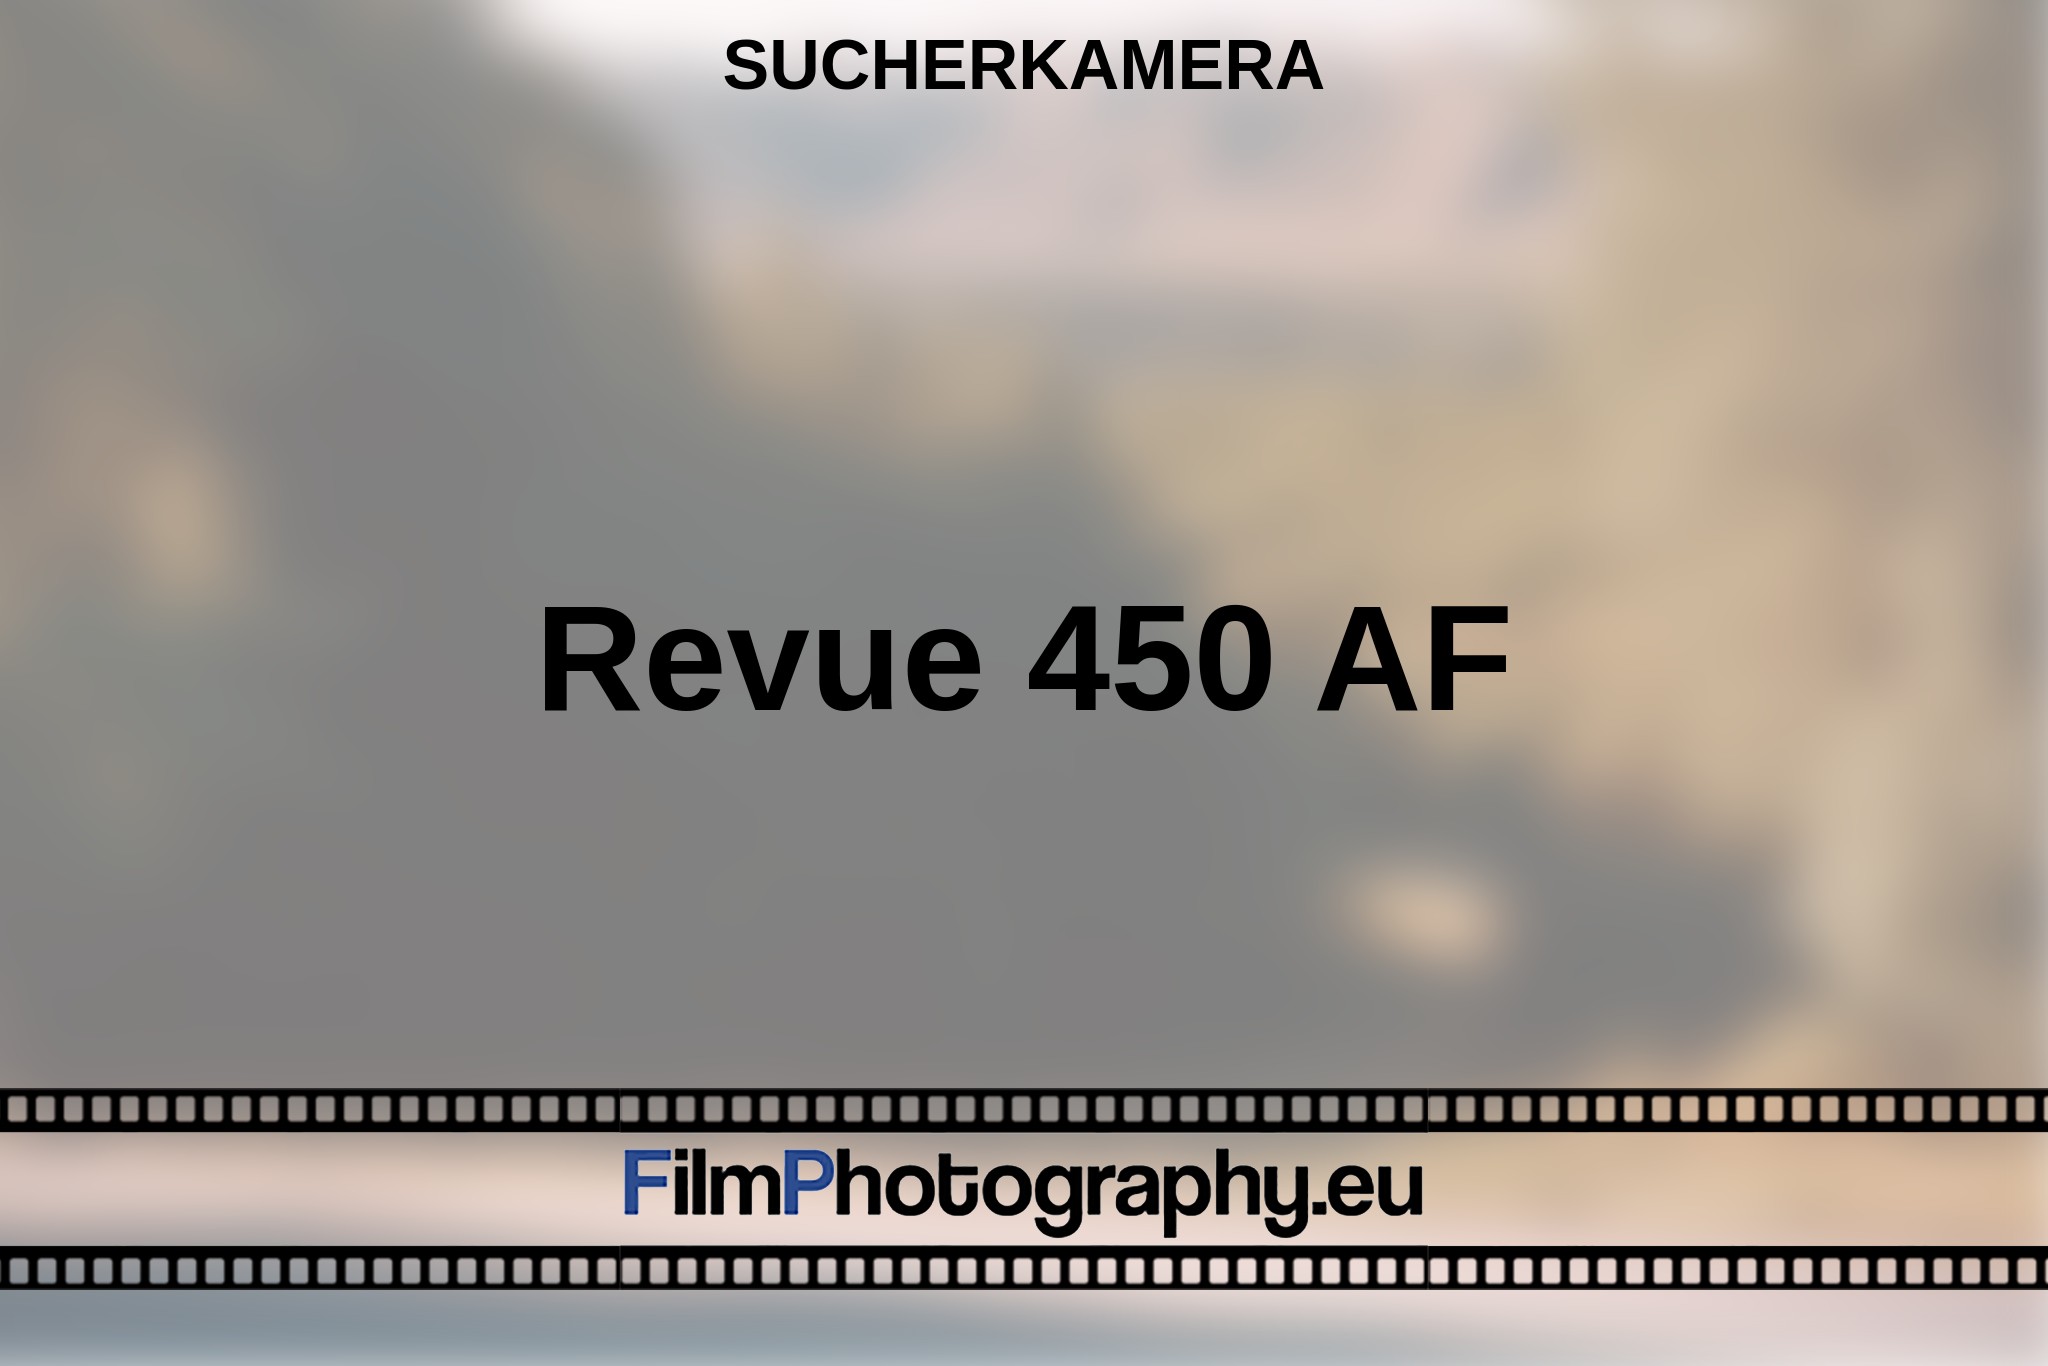 revue-450-af-sucherkamera-bnv.jpg